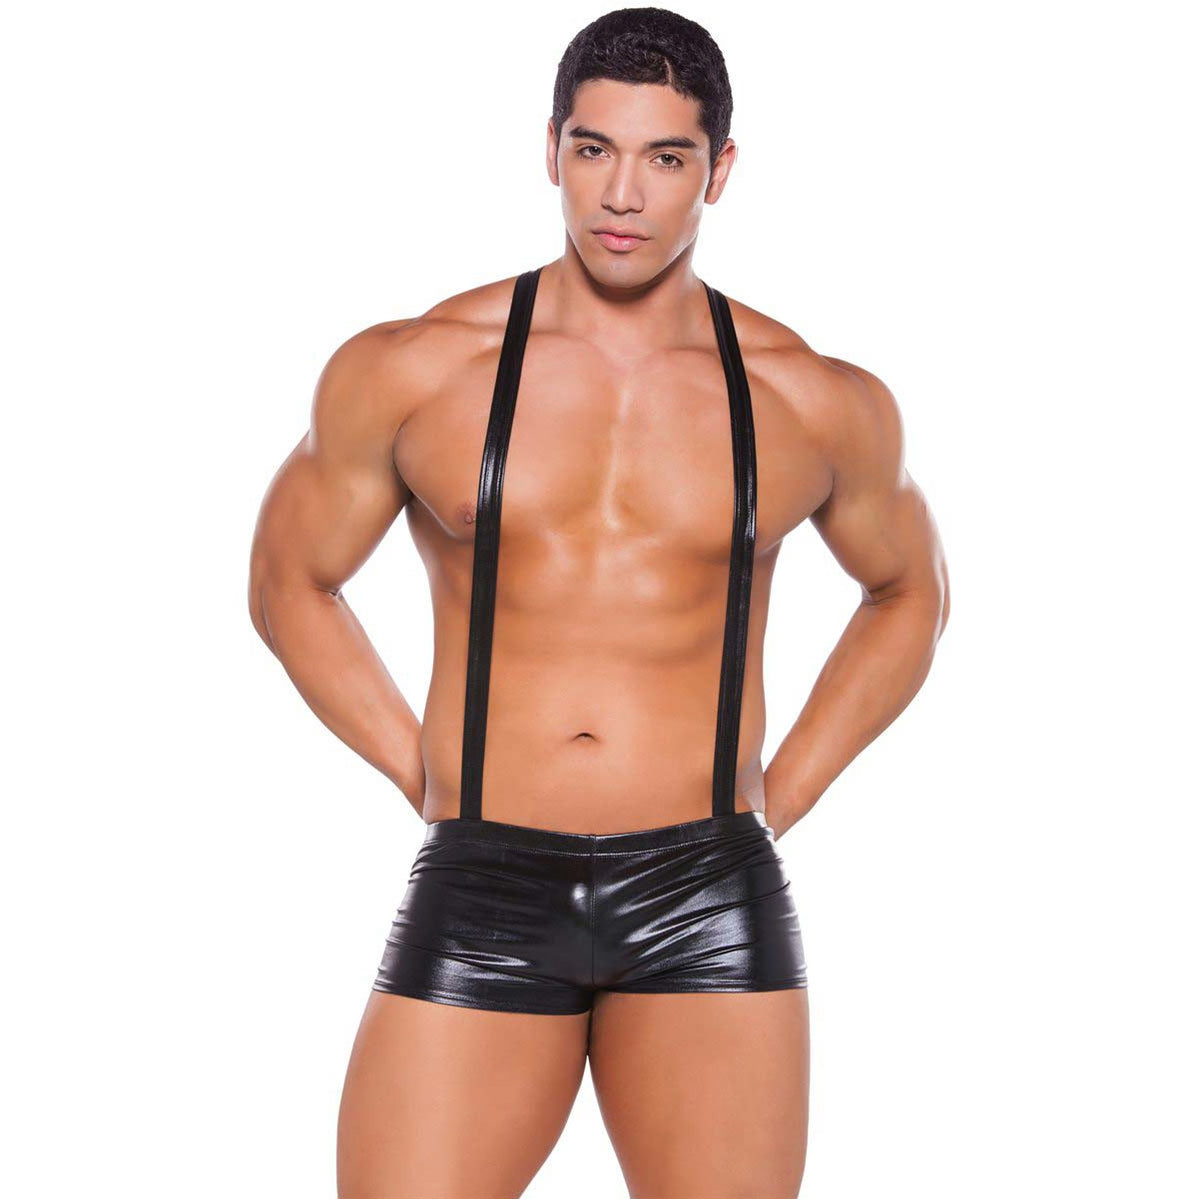 Allure Zeus - Wet Look Suspender Shorts - Black - O/S